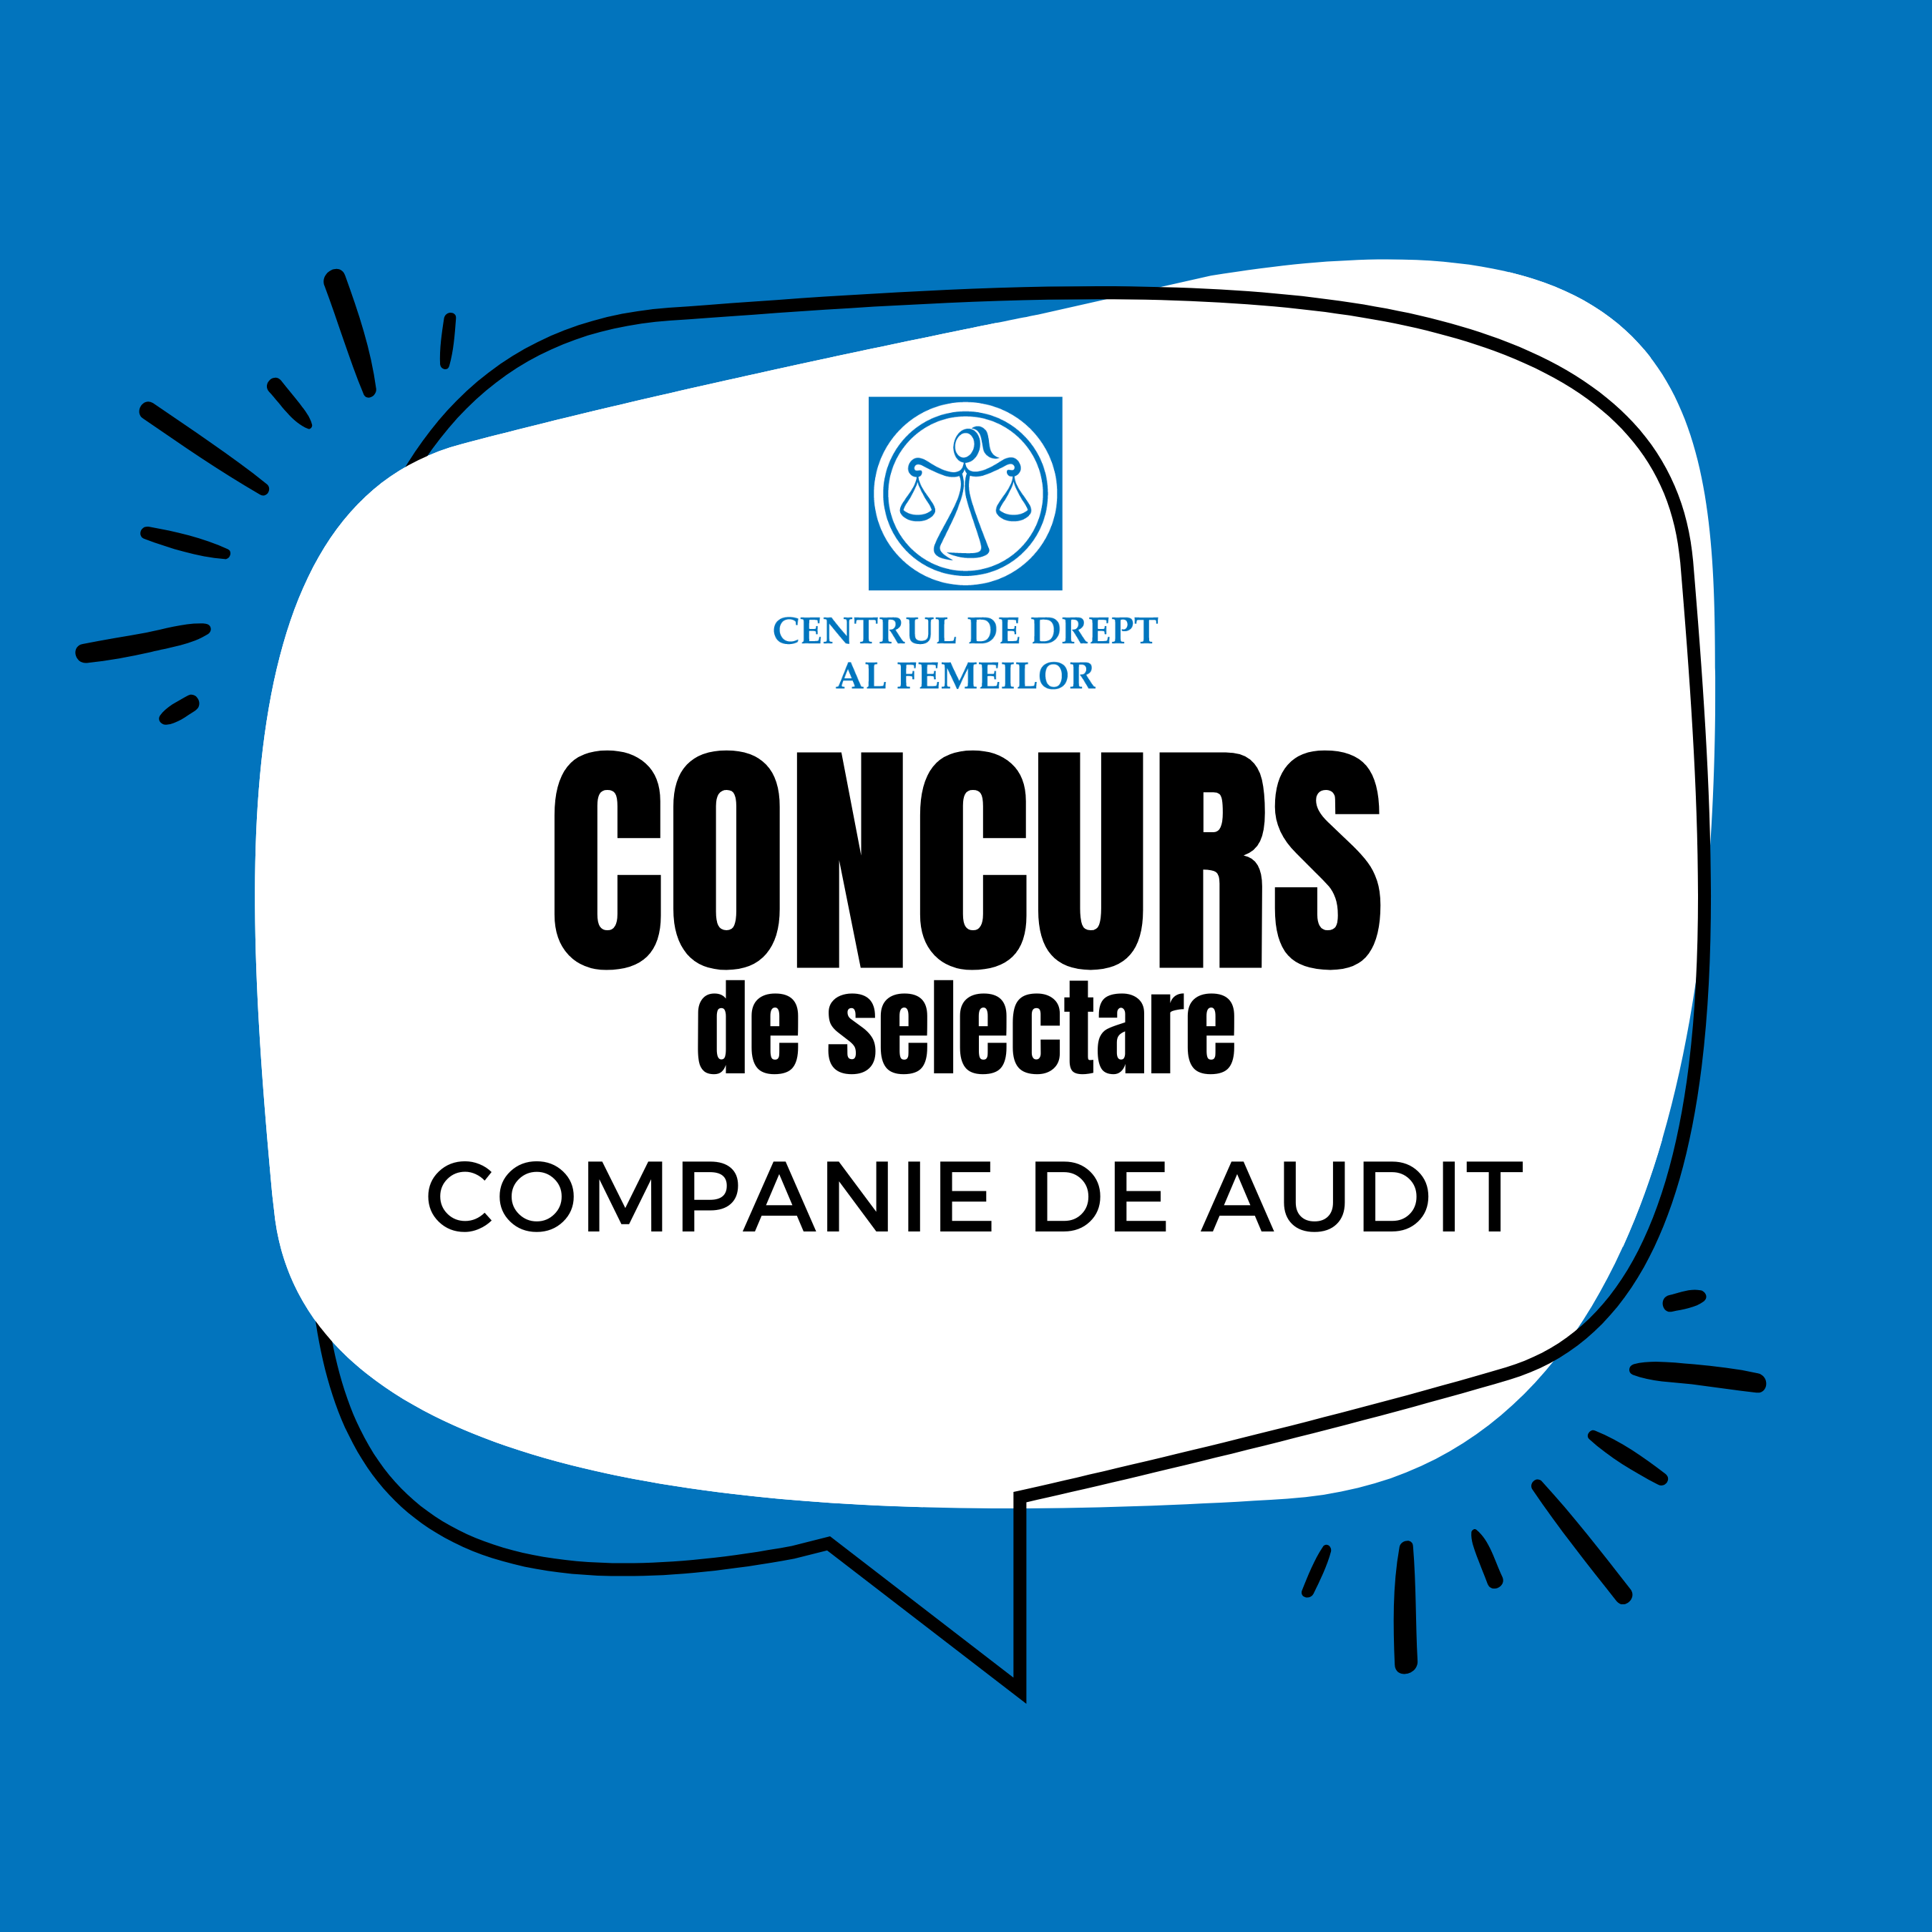 CDF anunță concurs de selectare a unei companii de audit care va efectua auditul financiar general al organizației